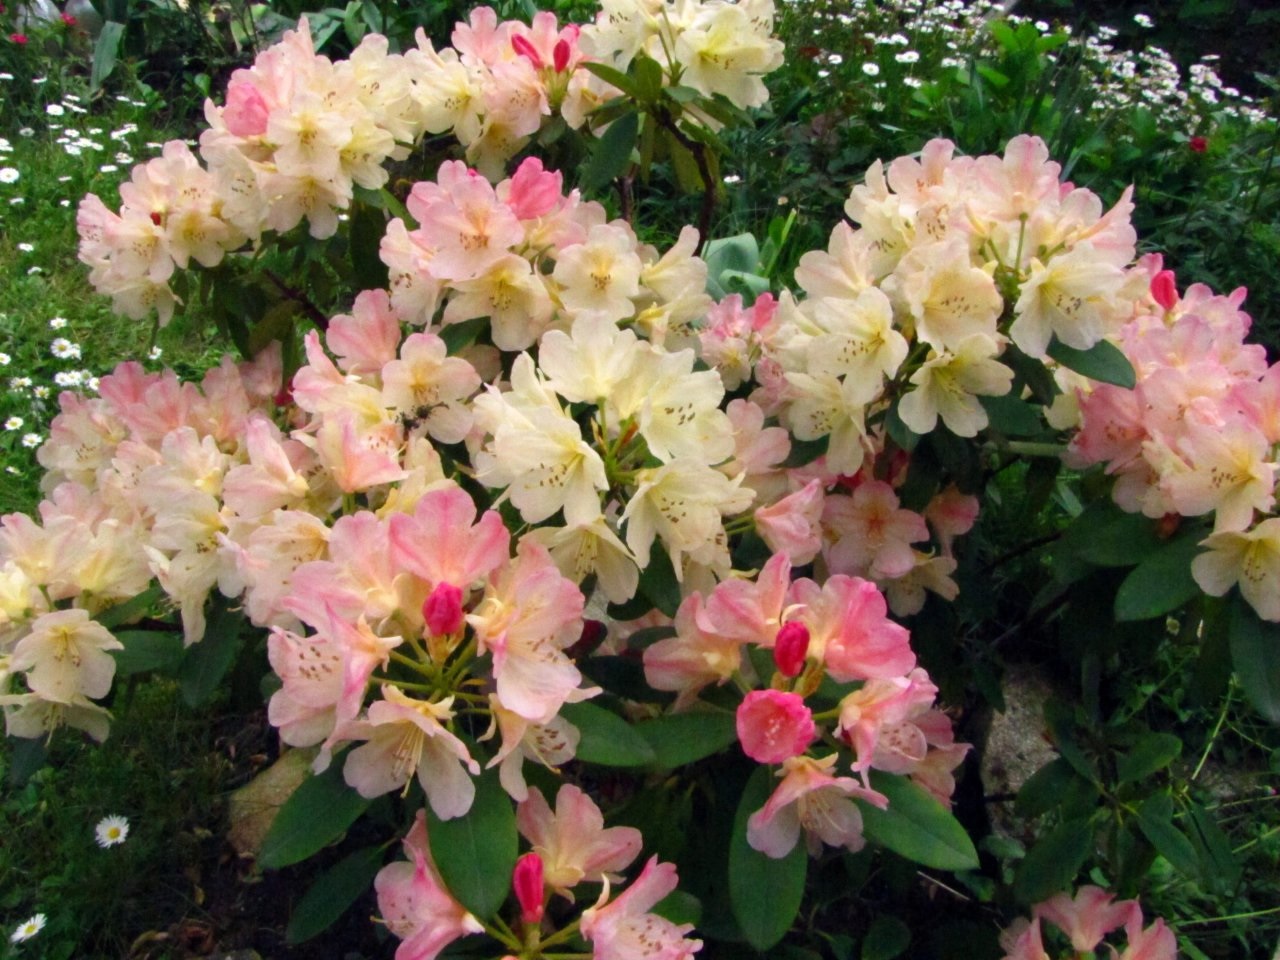 La combinazione di rosa e bianco sui petali di rododendro